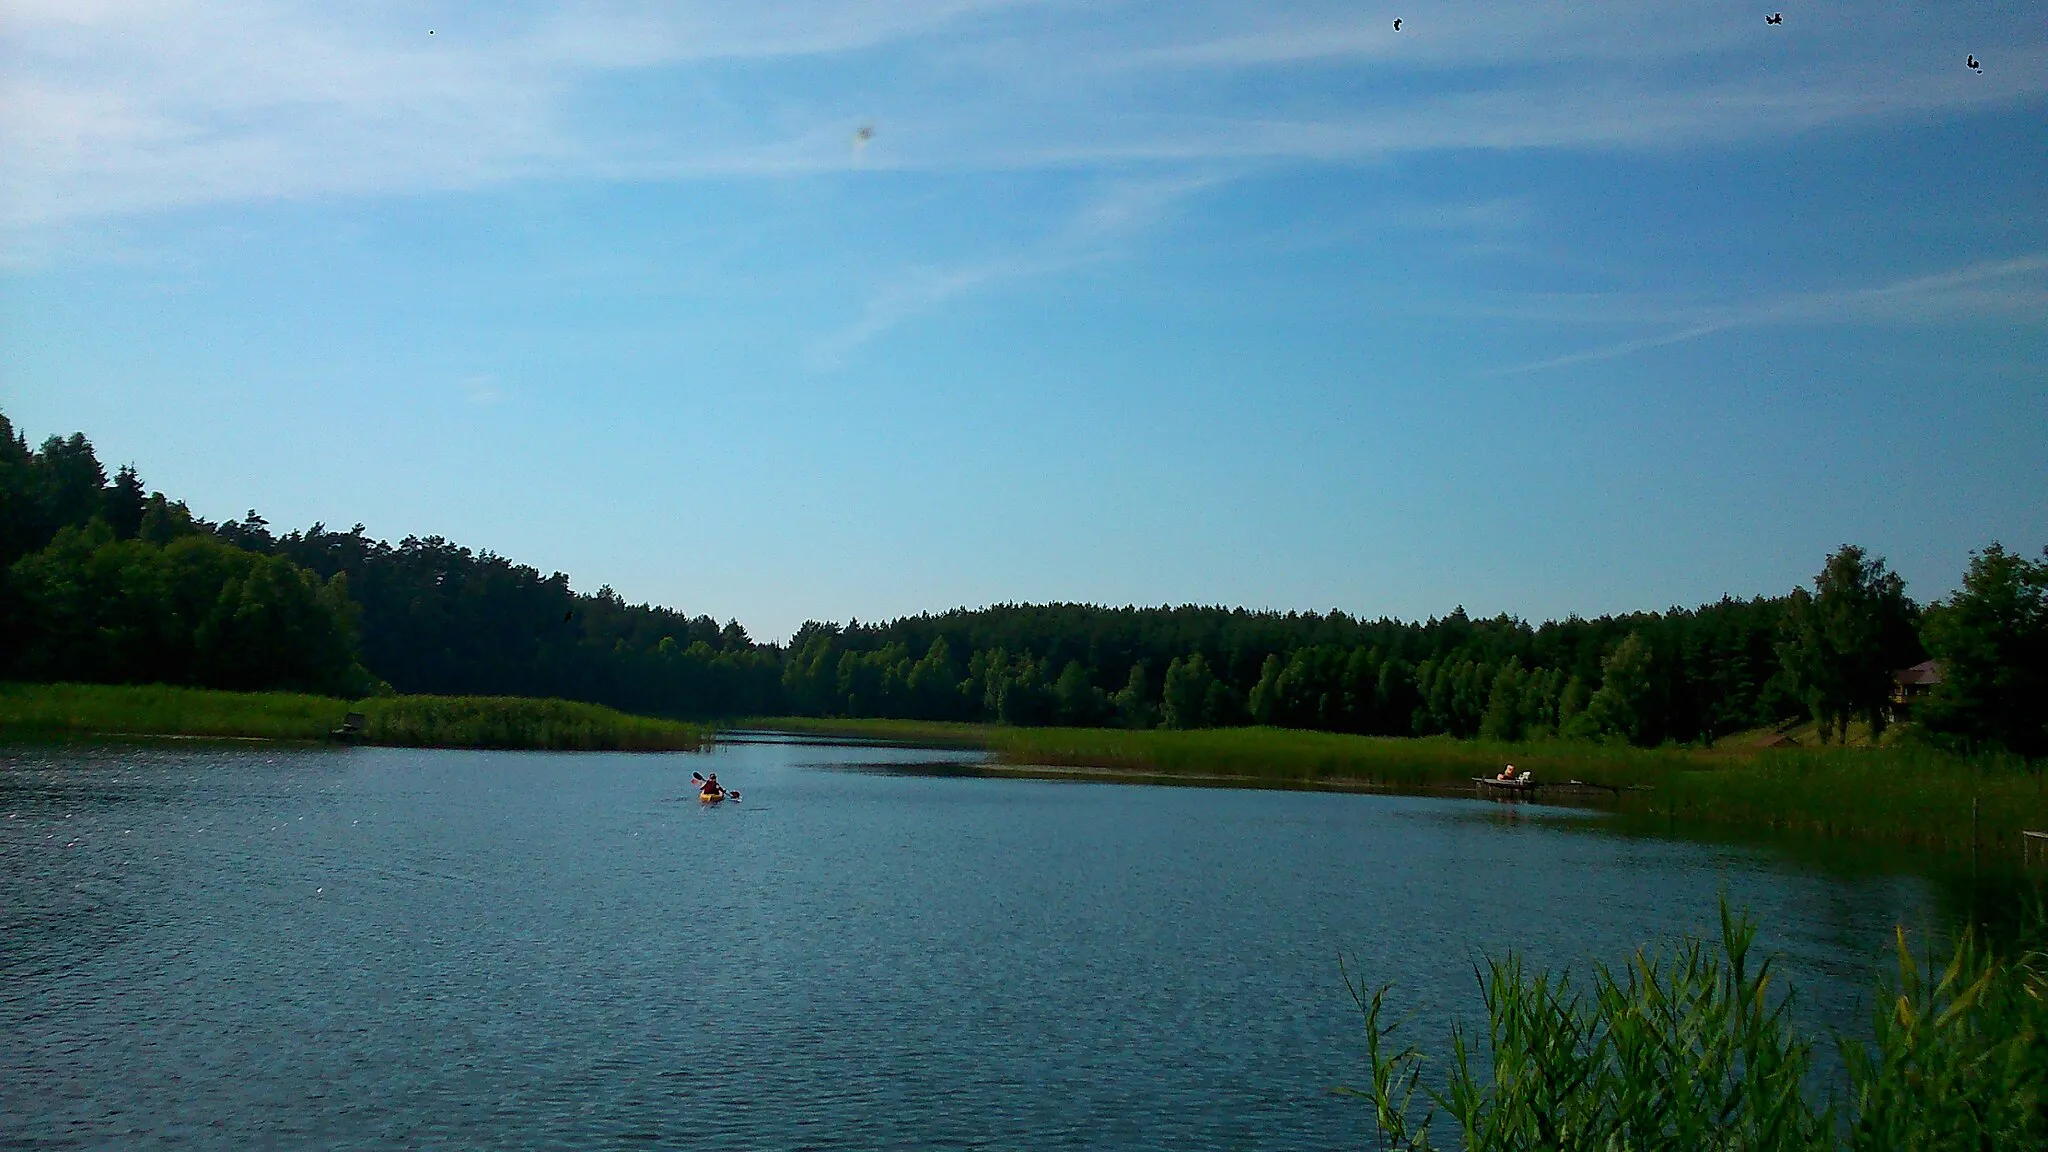 Photo showing: Psie Głowy - village in West Pomeranian Voivodeship, Poland.